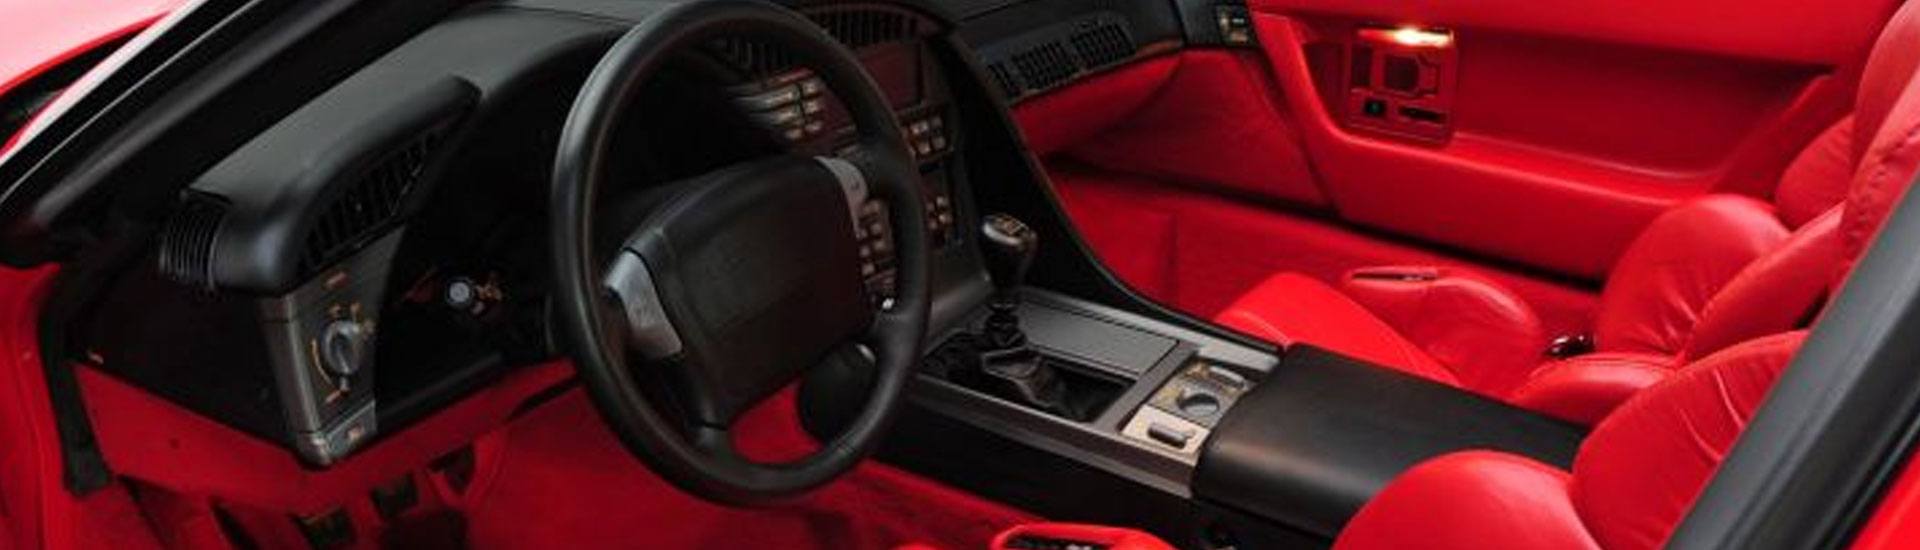 1990 Chevrolet Corvette Dash Kits